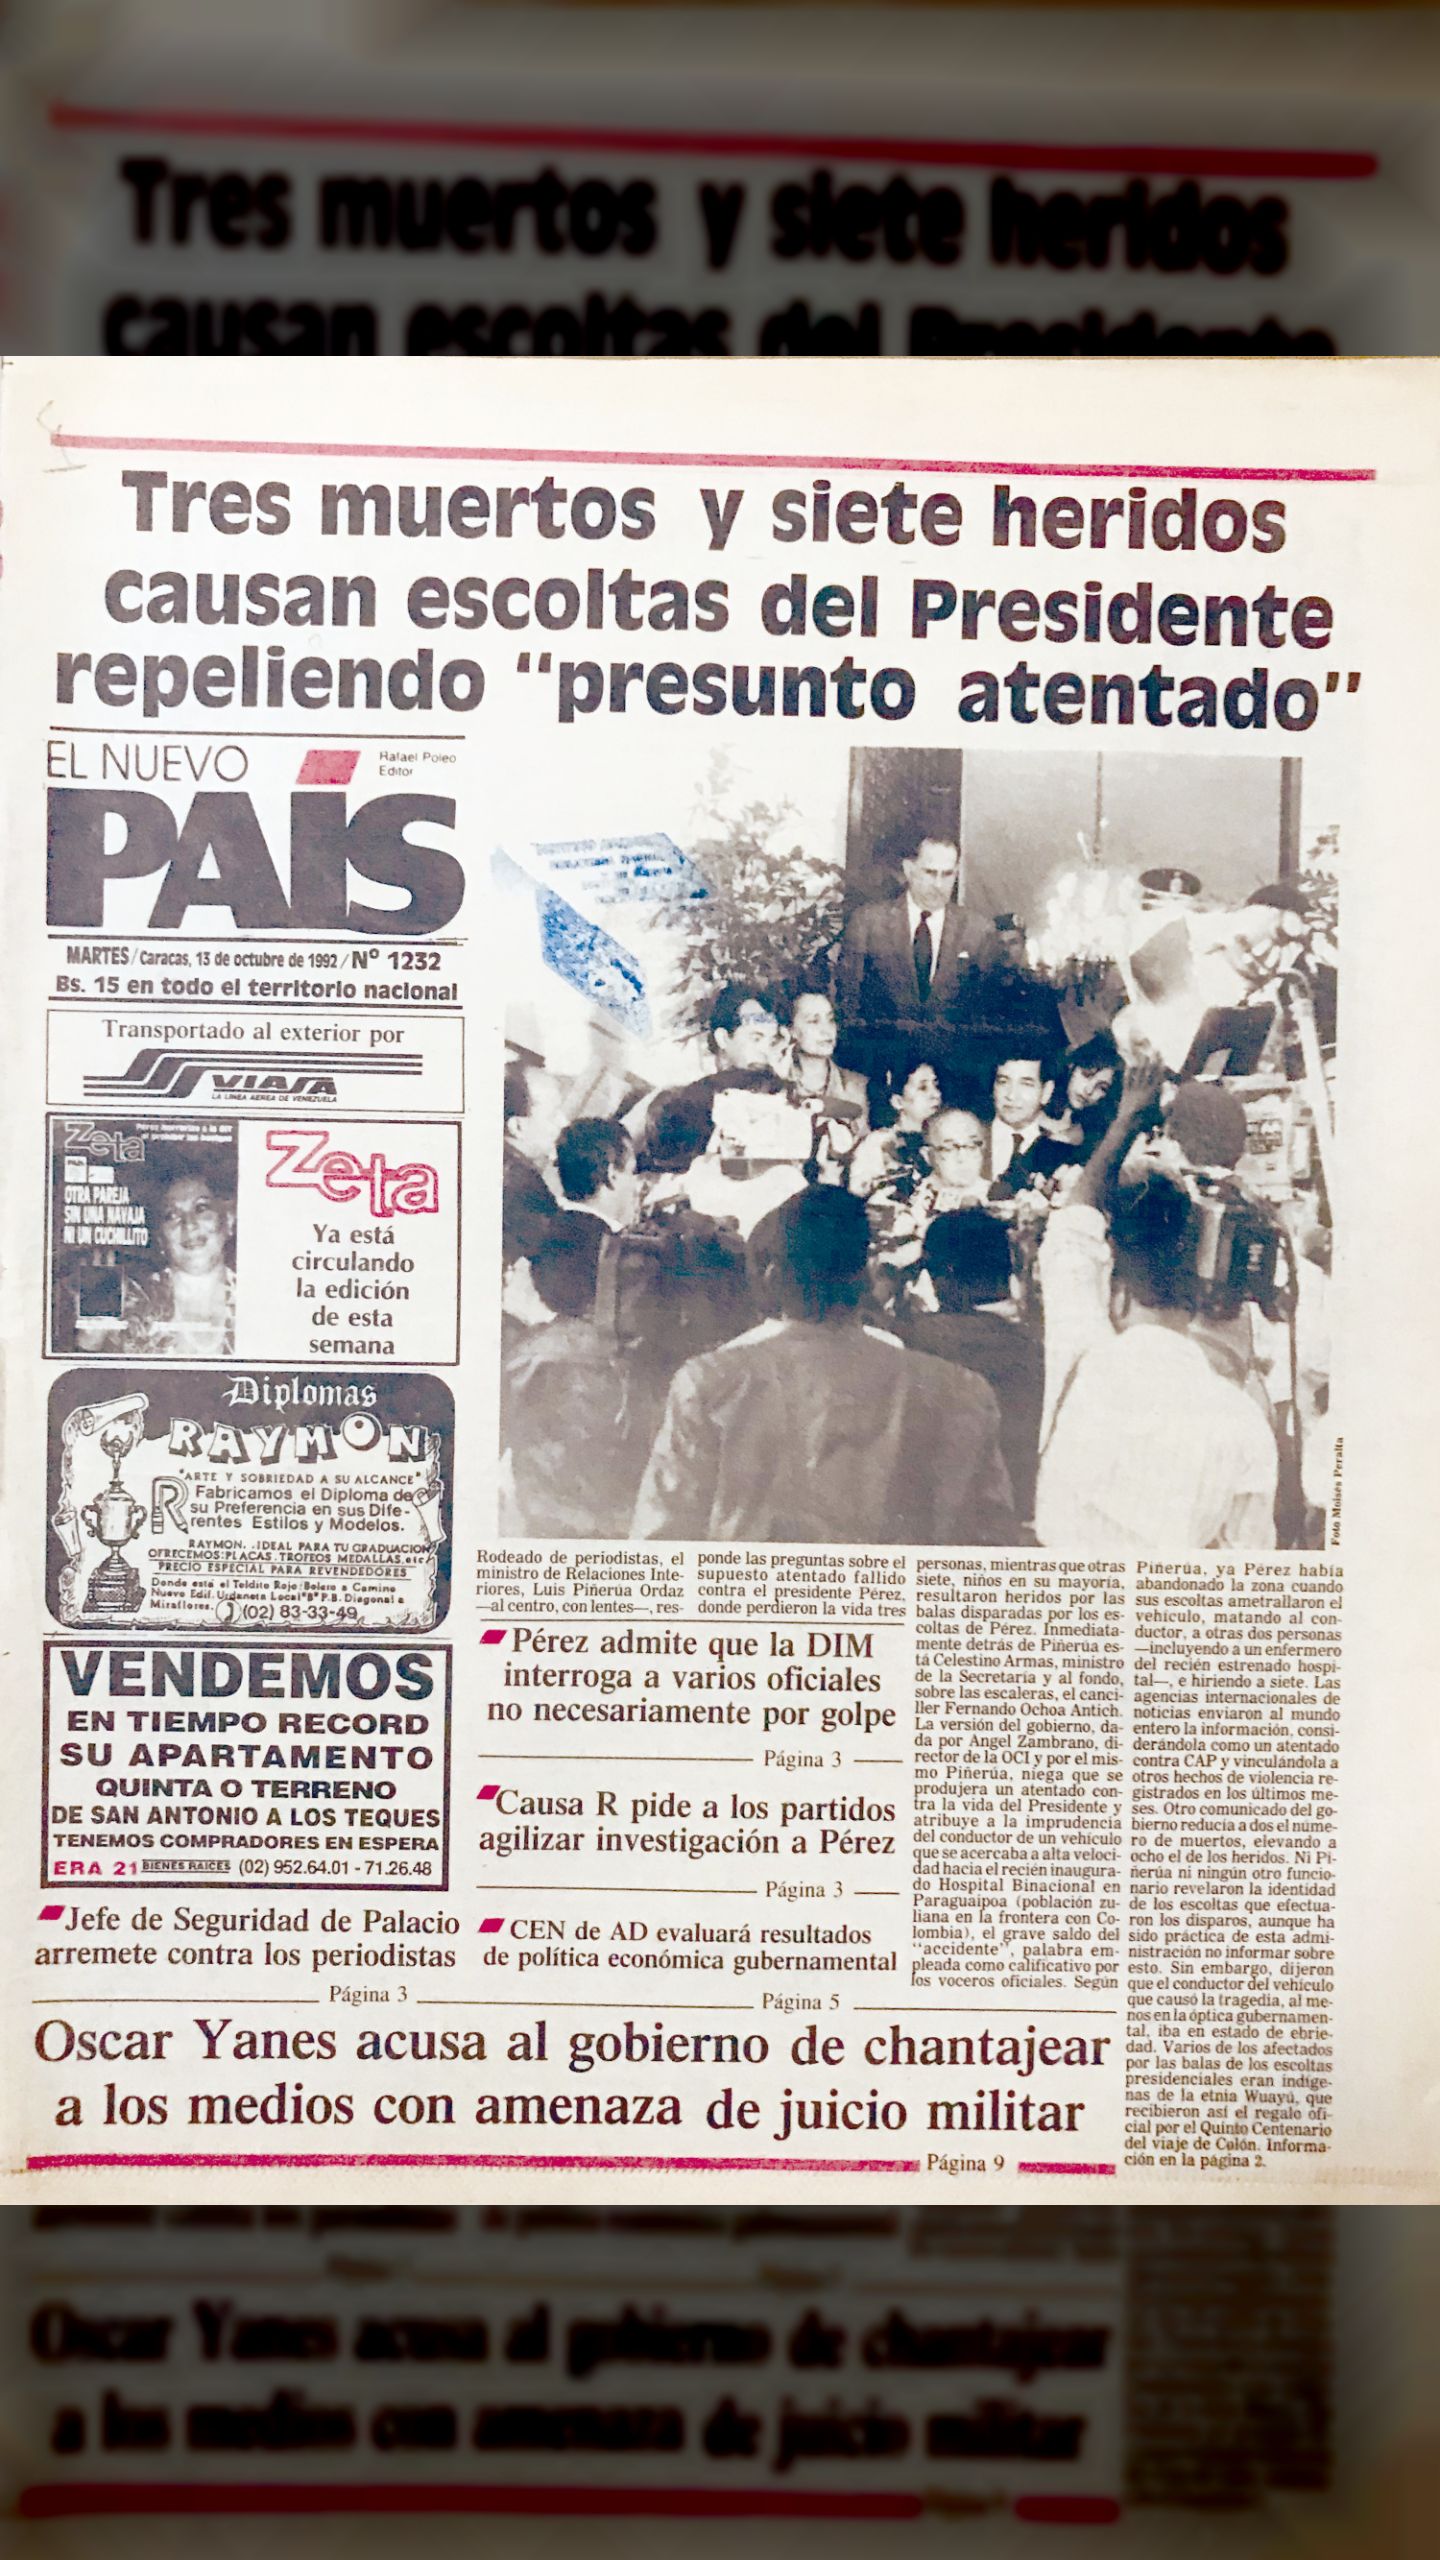 Tres muertos y siete heridos causan escoltas del Presidente repeliendo “presunto atentando” (El Nuevo País, 13 octubre 1992)